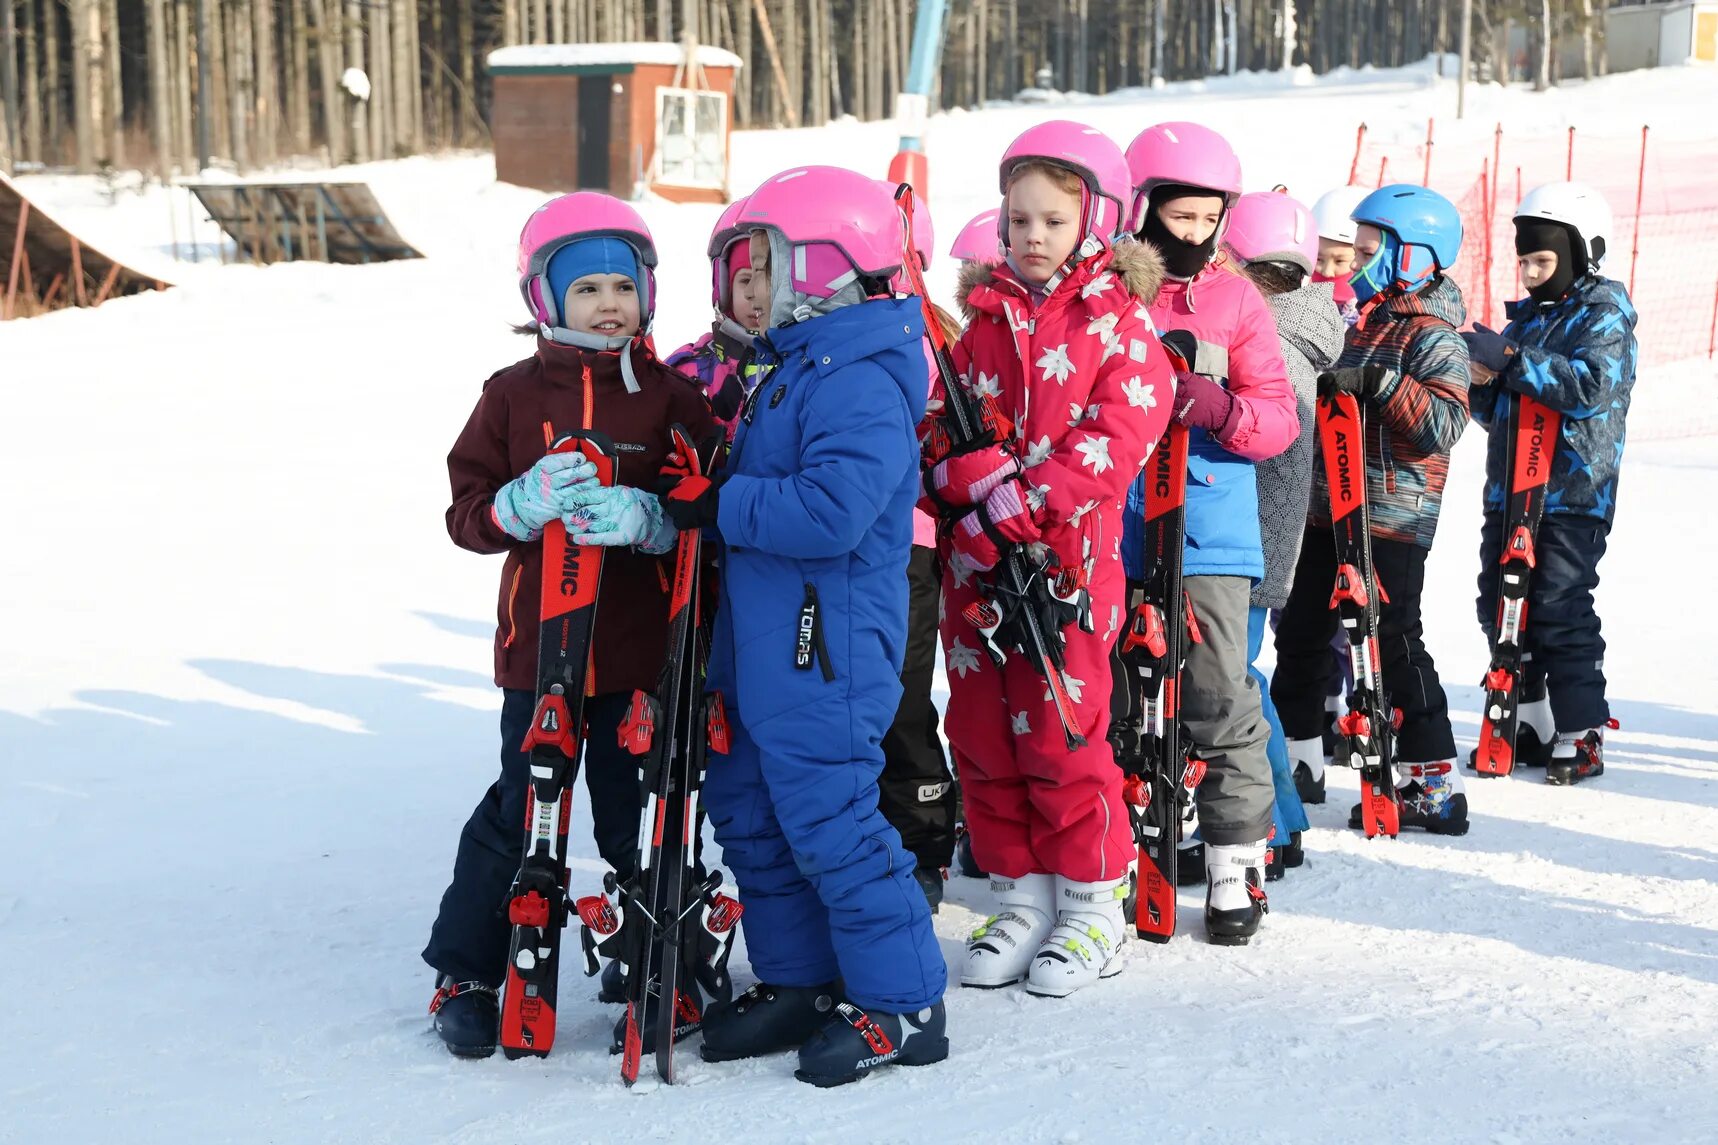 Лыжи ребенку в школу. Школа горнолыжного спорта. Лыжи в школе. Южно-Сахалинск катание на лыжах. Дети на лыжах в школе.